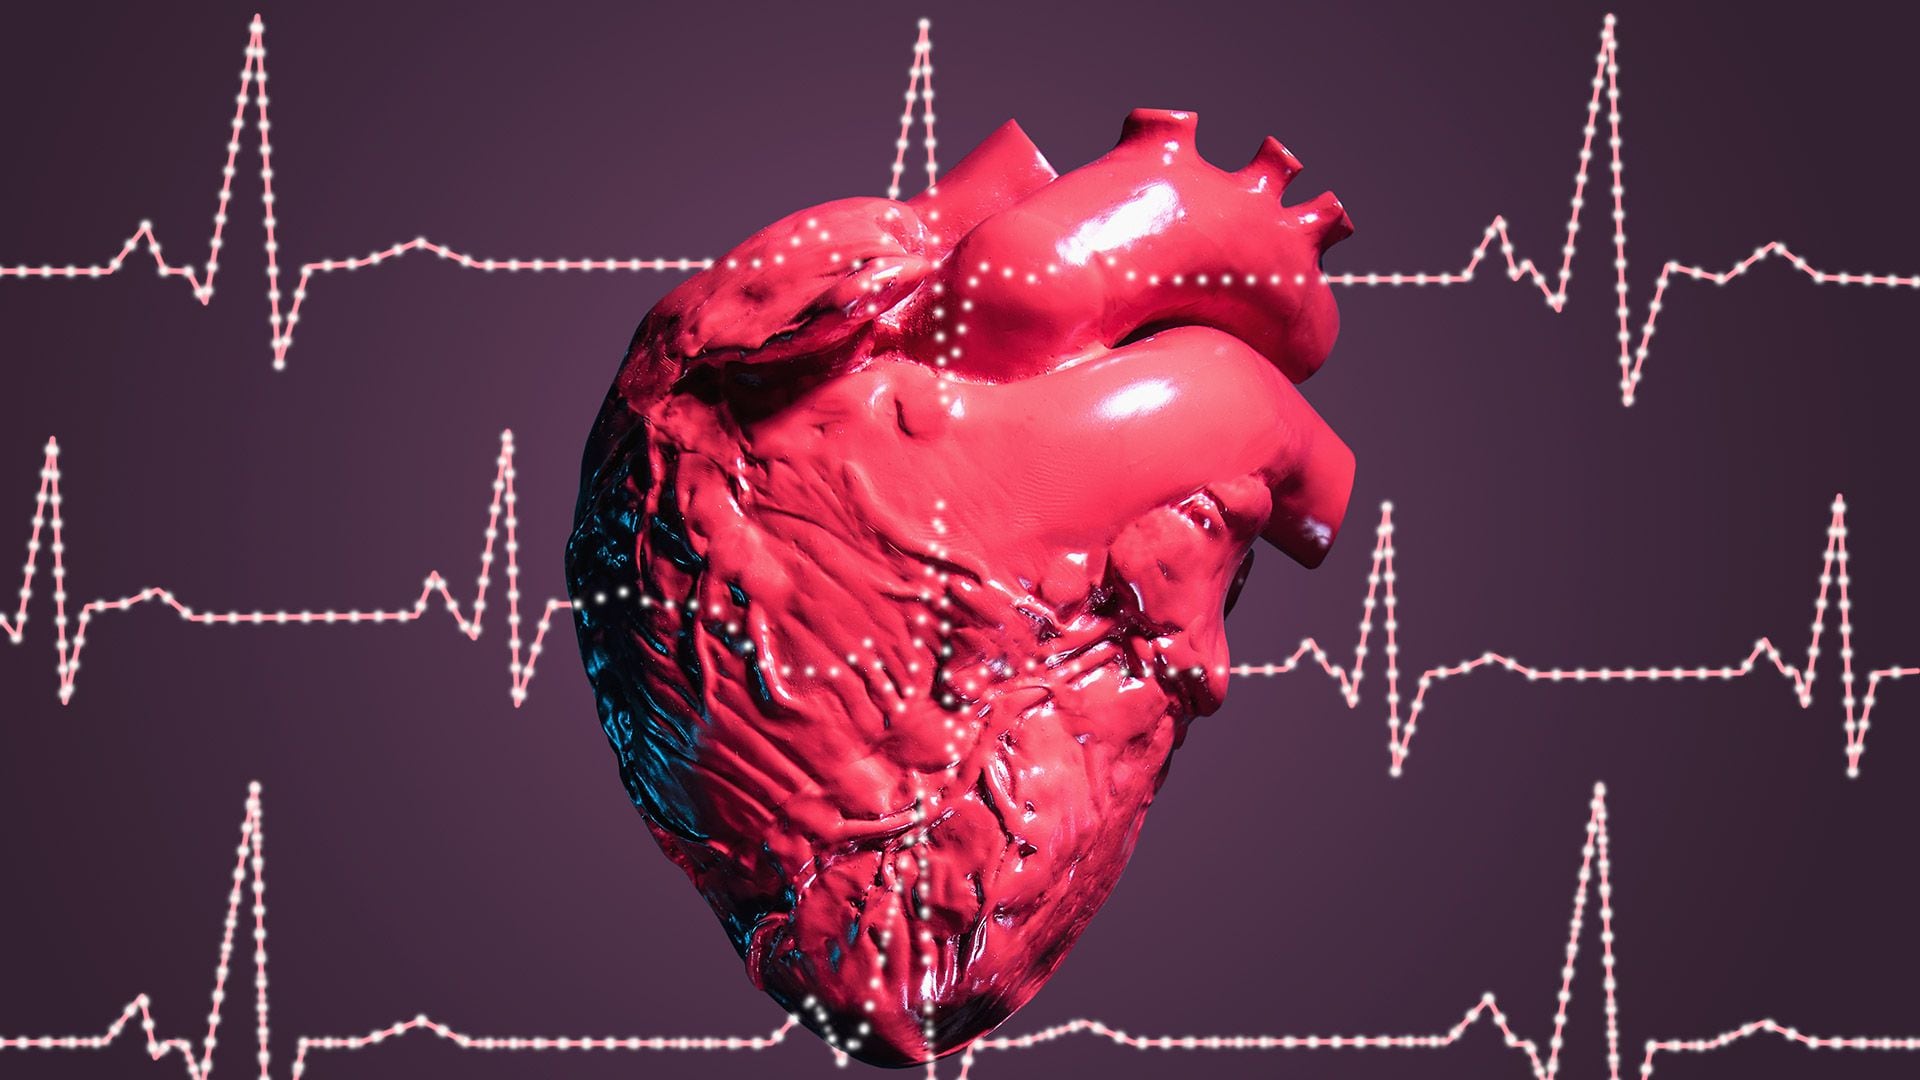 La angioplastia, un procedimiento que desbloquea arterias, ha reducido significativamente la mortalidad cardiovascular